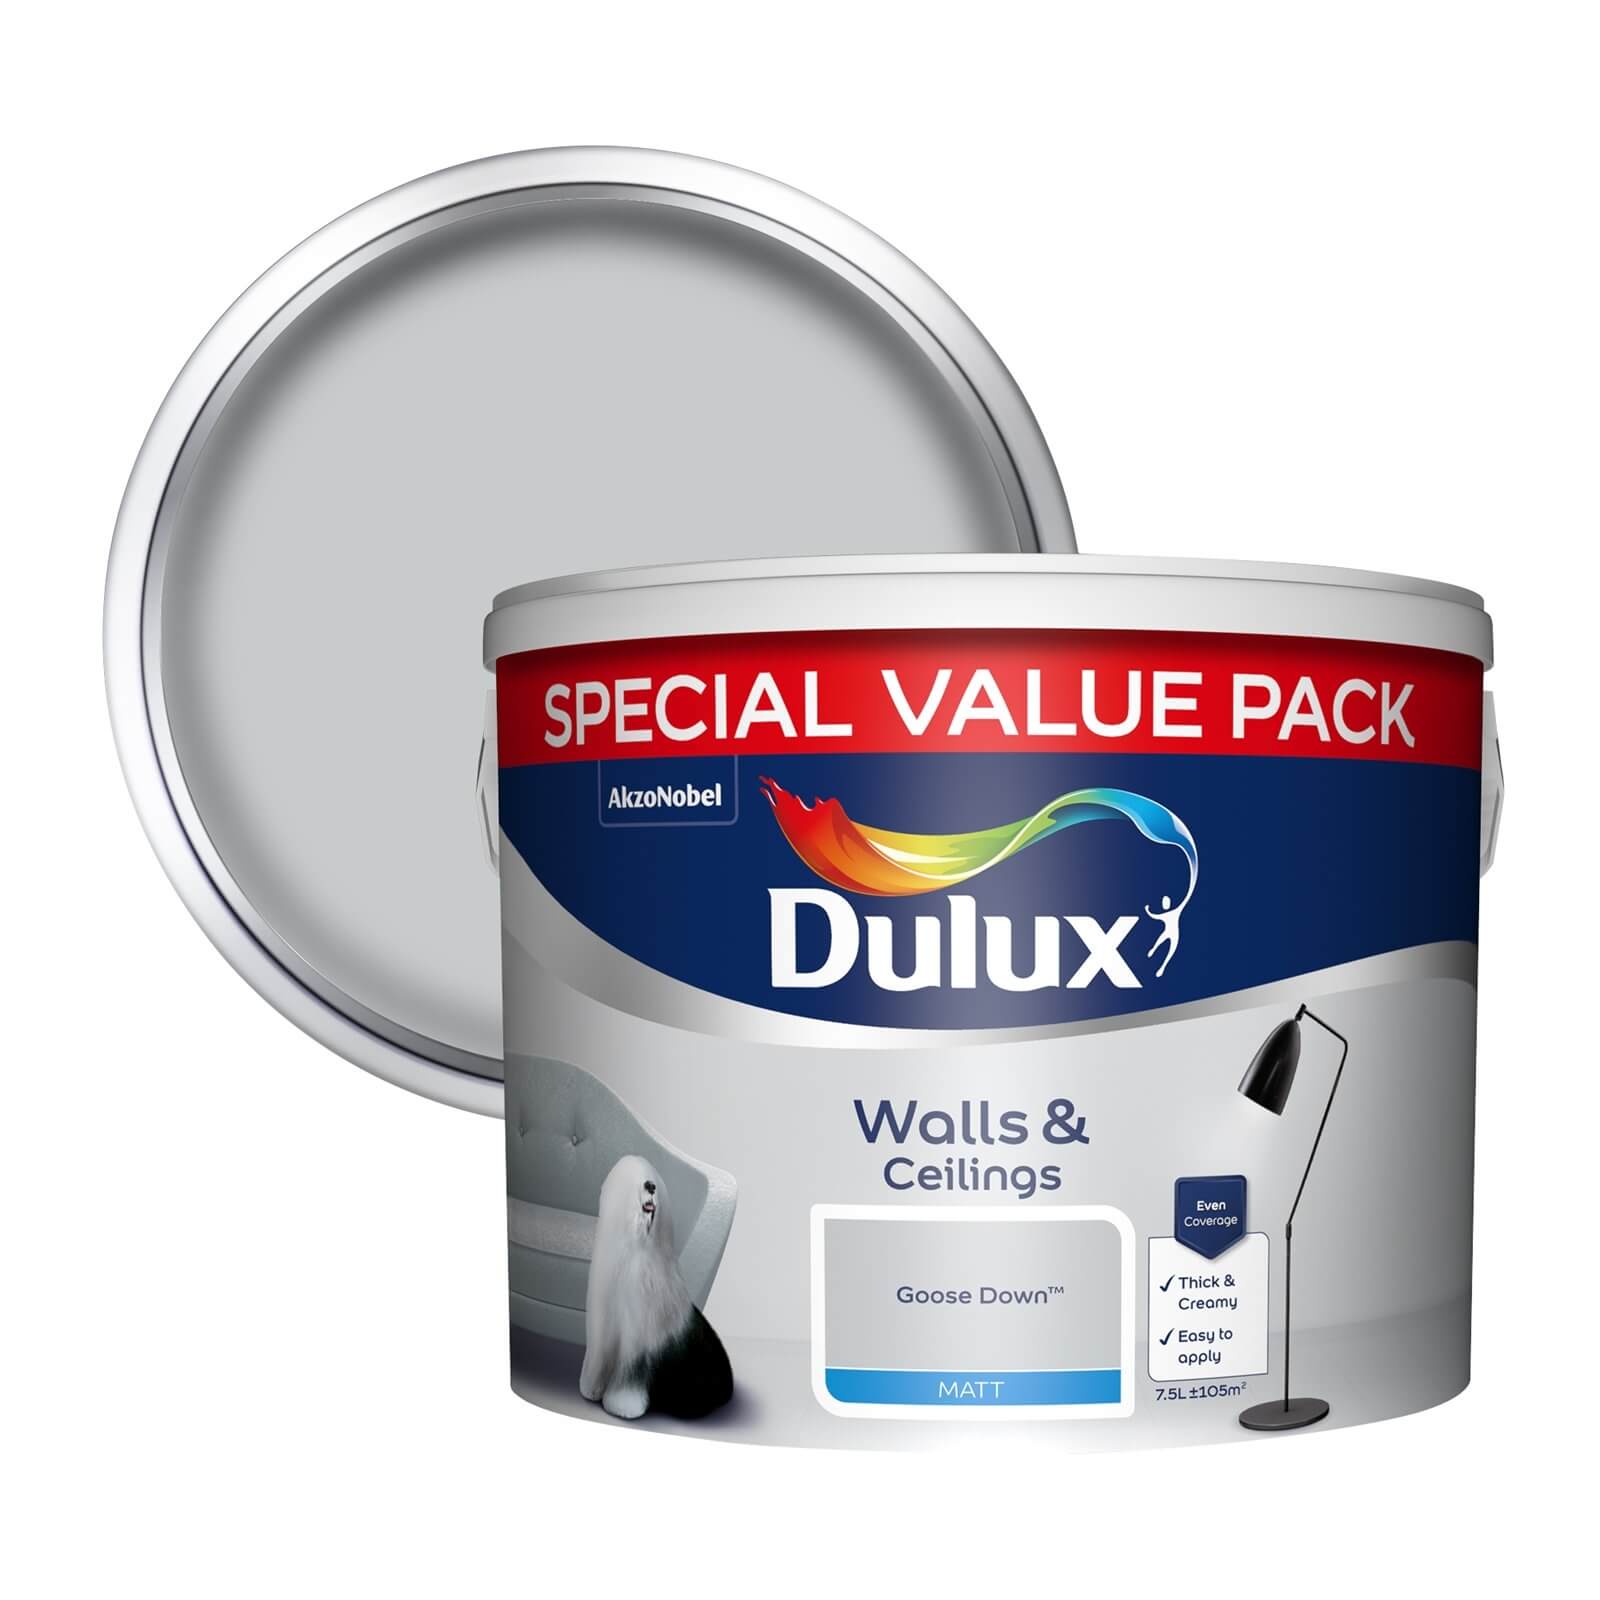 Dulux Walls & Ceilings Matt Emulsion Paint Goose Down - 7.5L